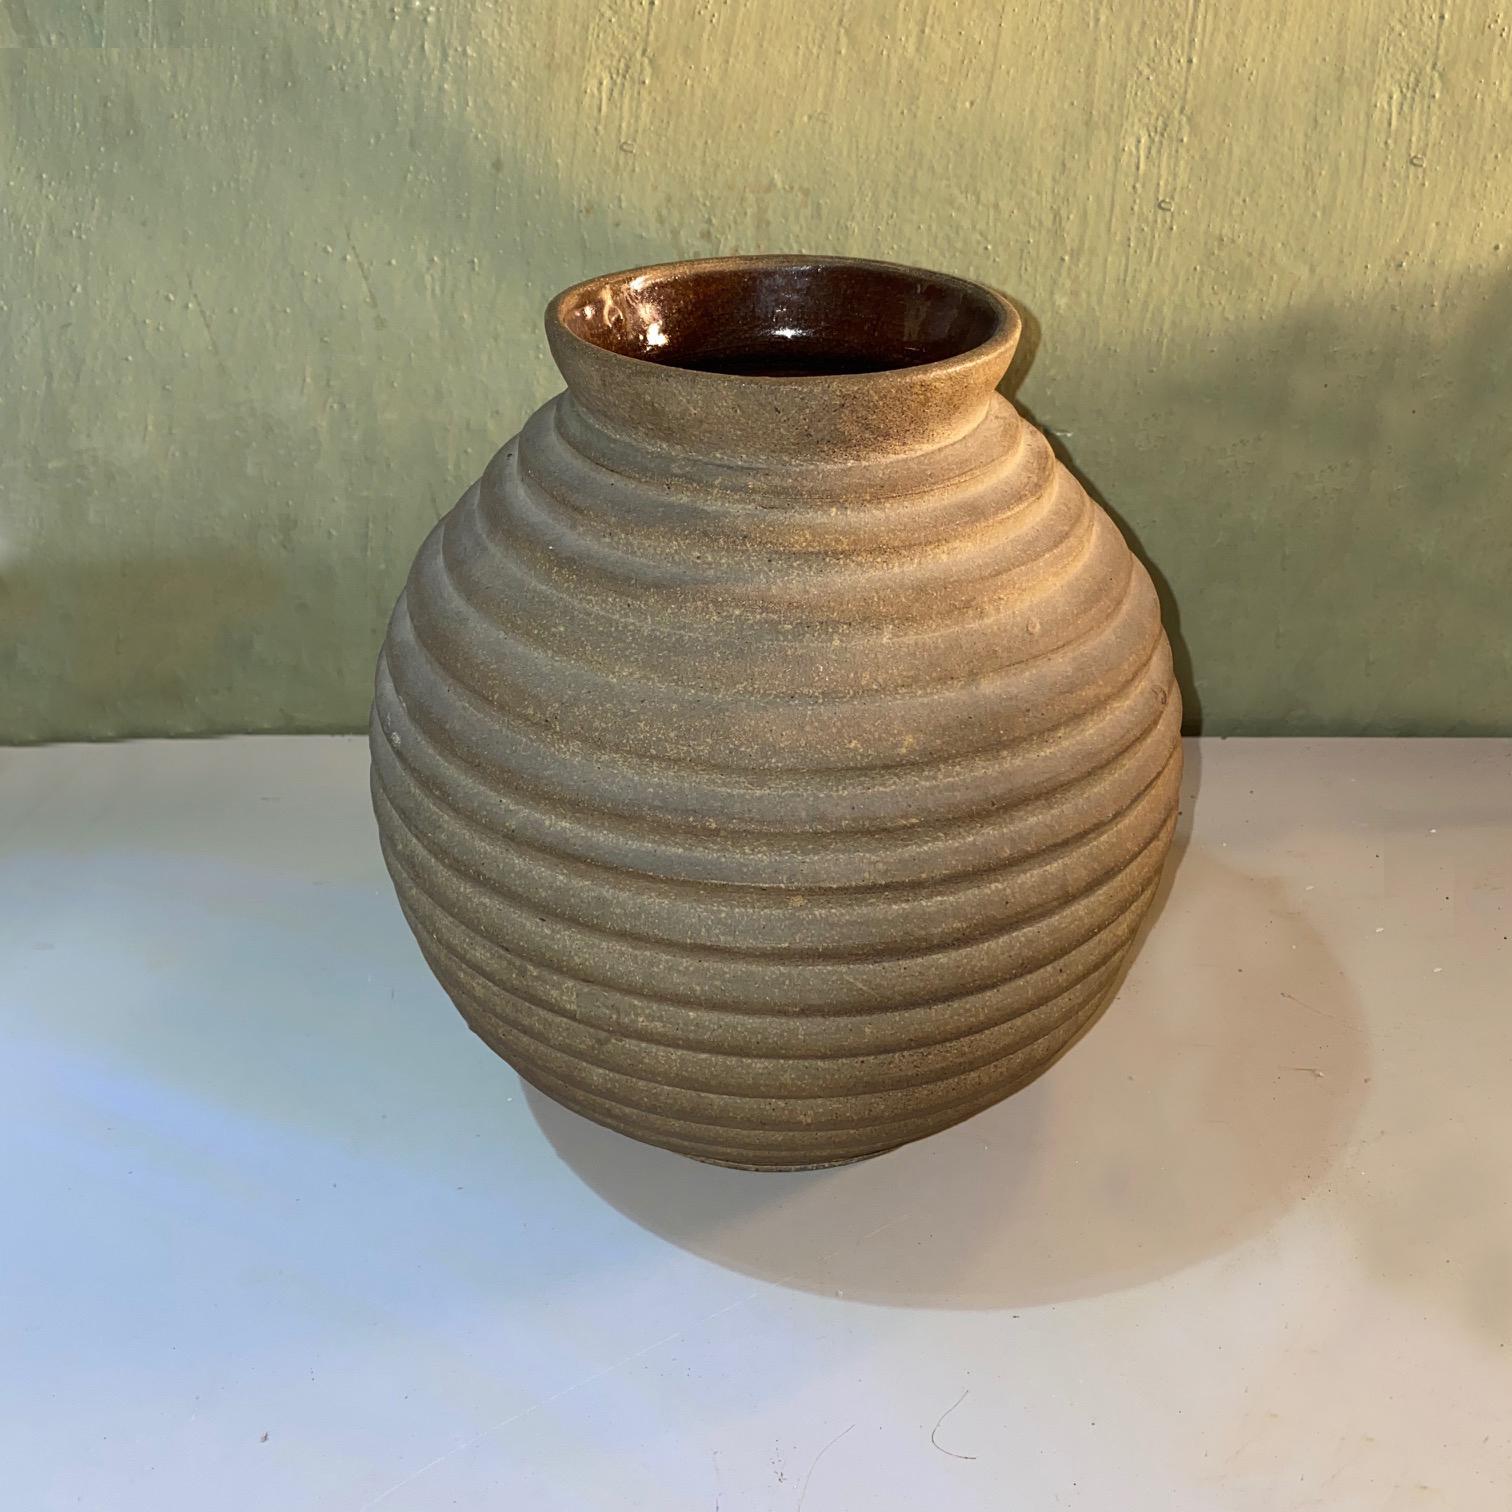 Spherical shape ceramic vase from 1930s.